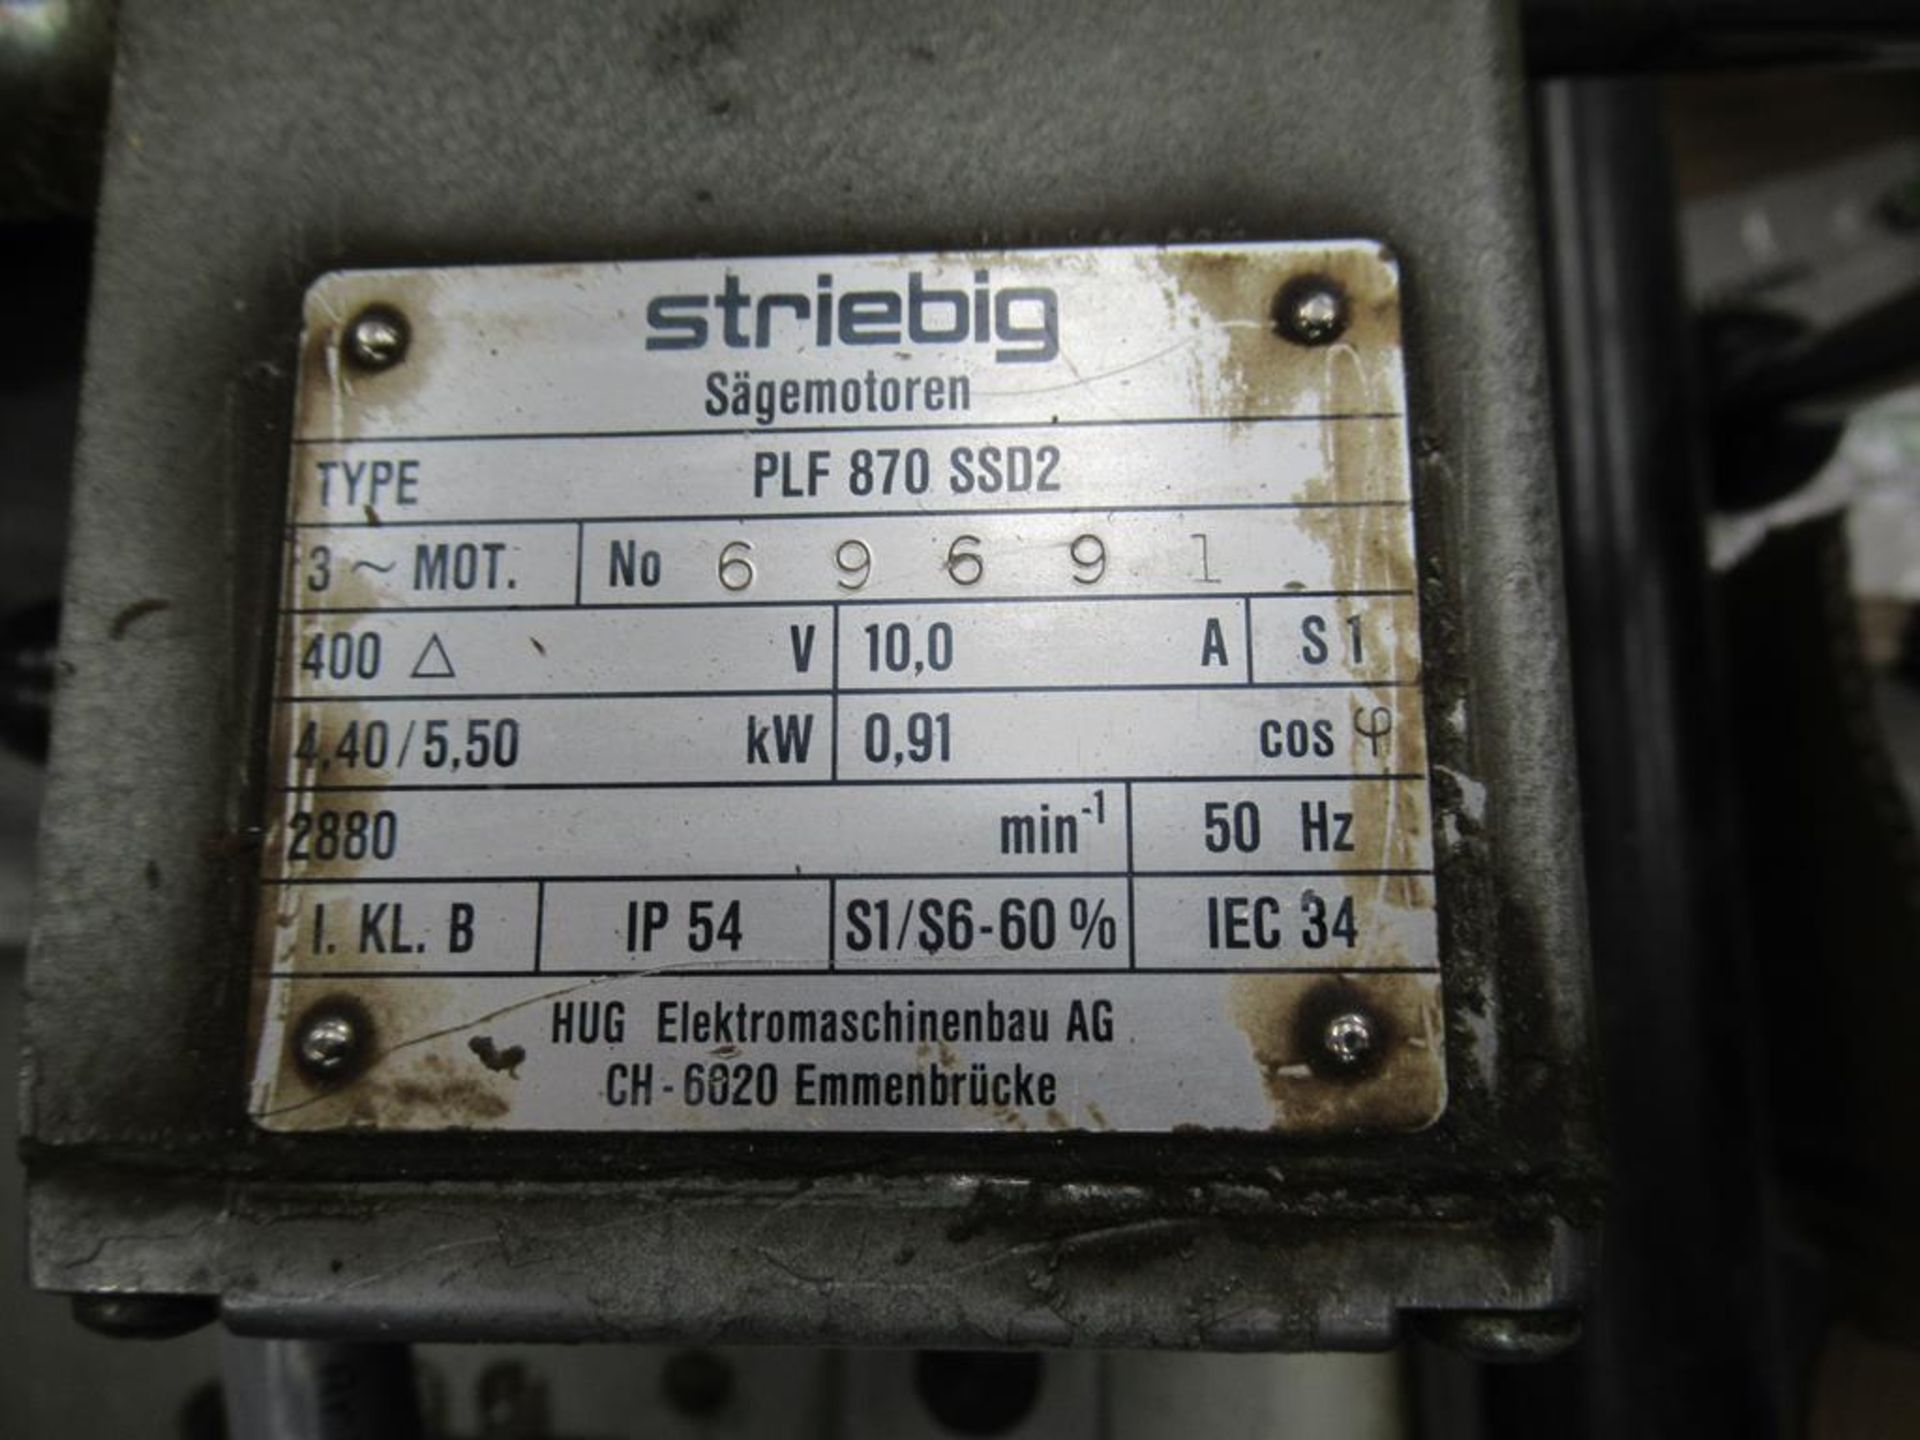 A Striebig Standard II TRK vertical Panelsaw s/n 35735, 400V, 3 phase, 50Hz - Image 6 of 8